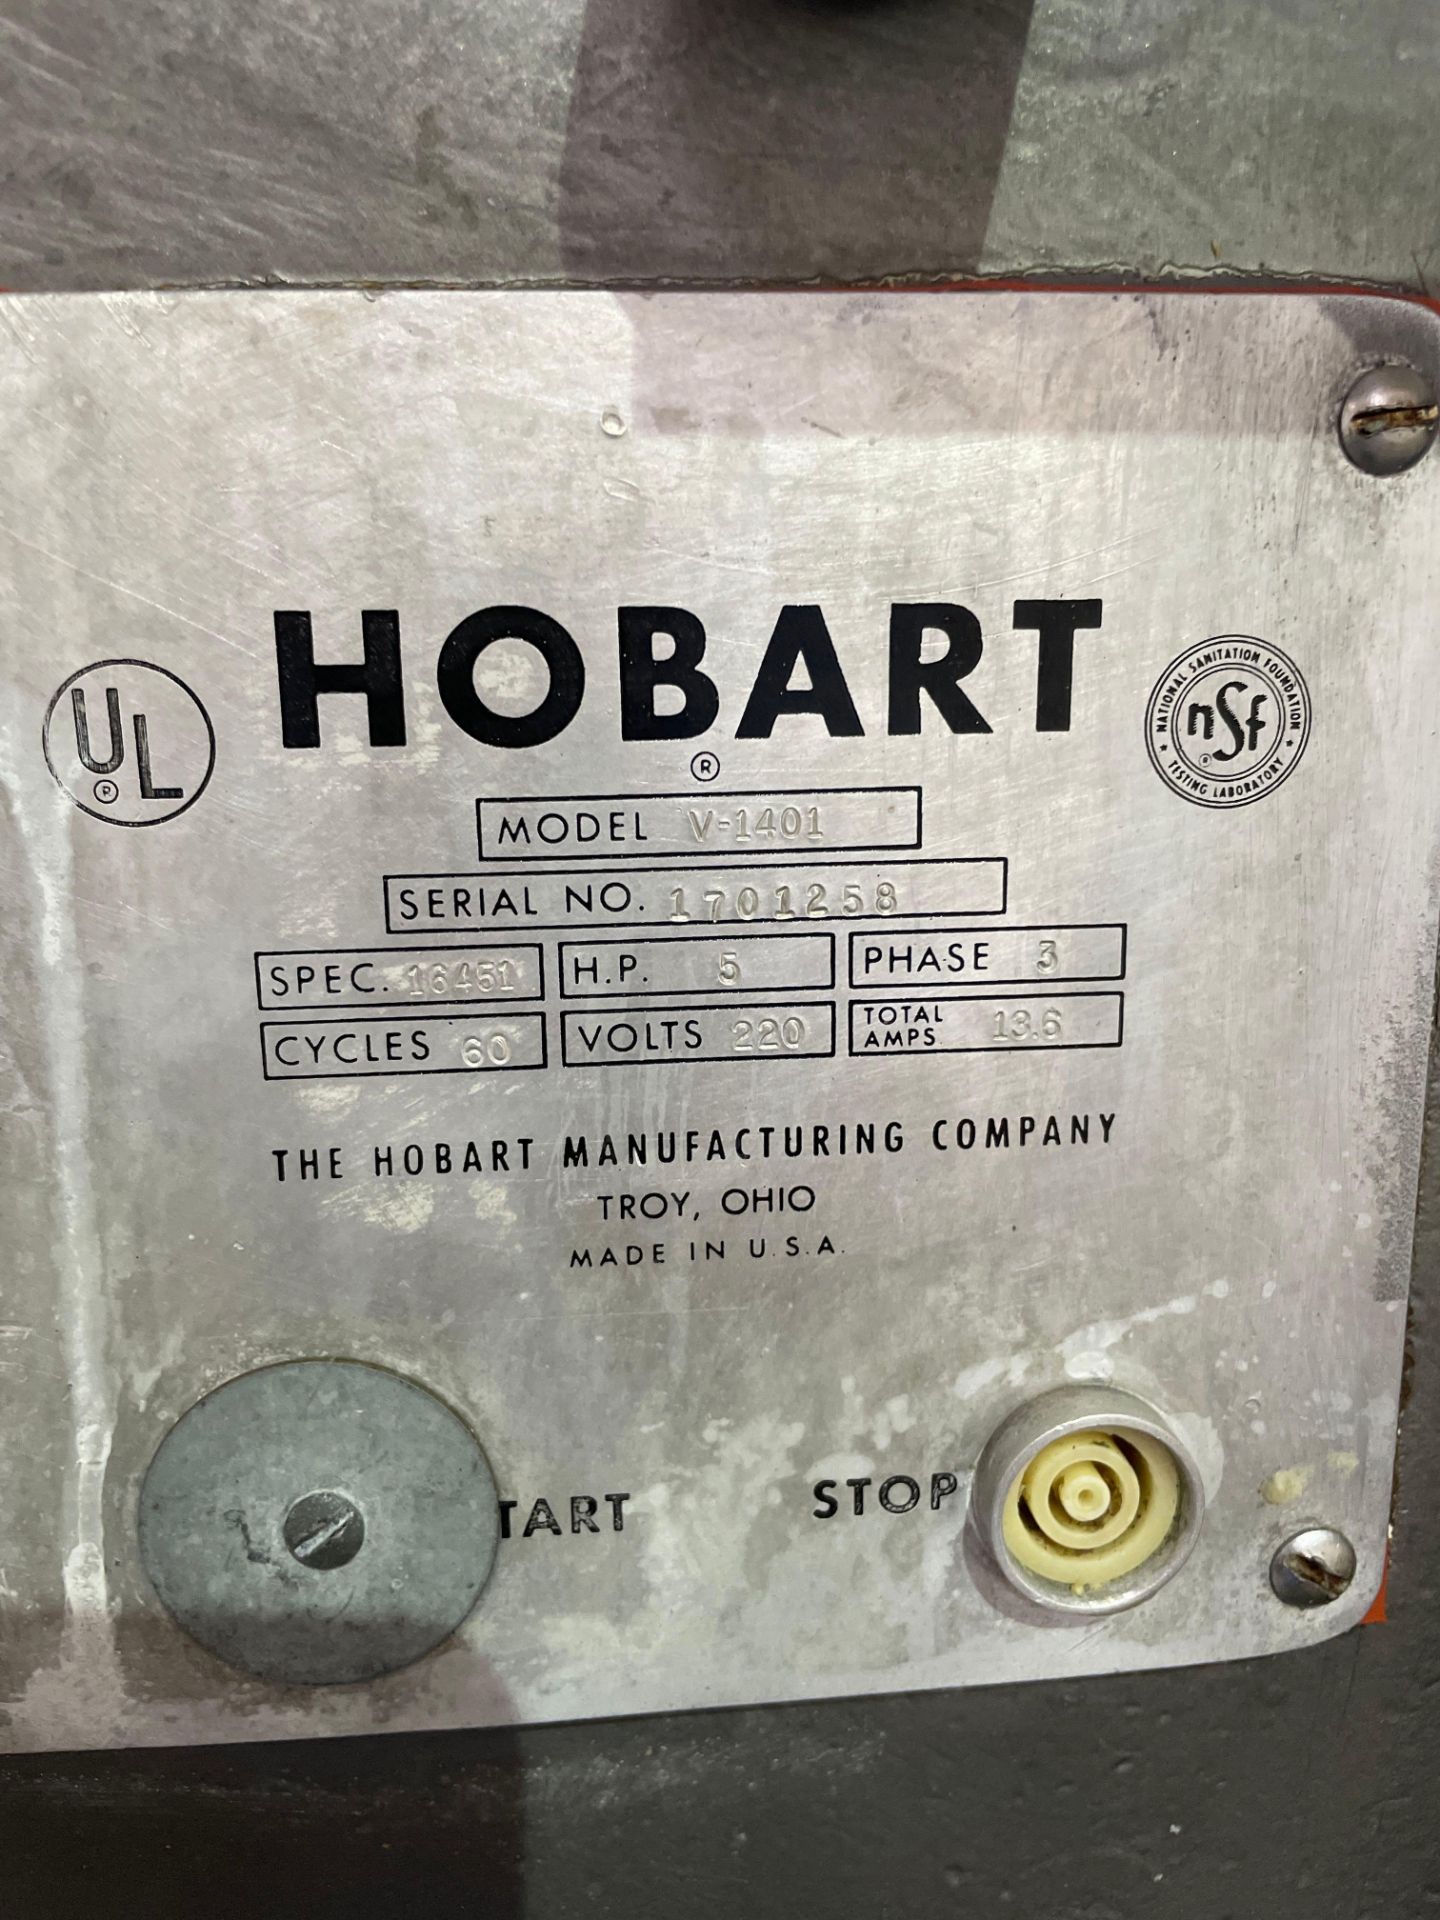 Hobart V-1401 Bowl Mixer - Image 4 of 5